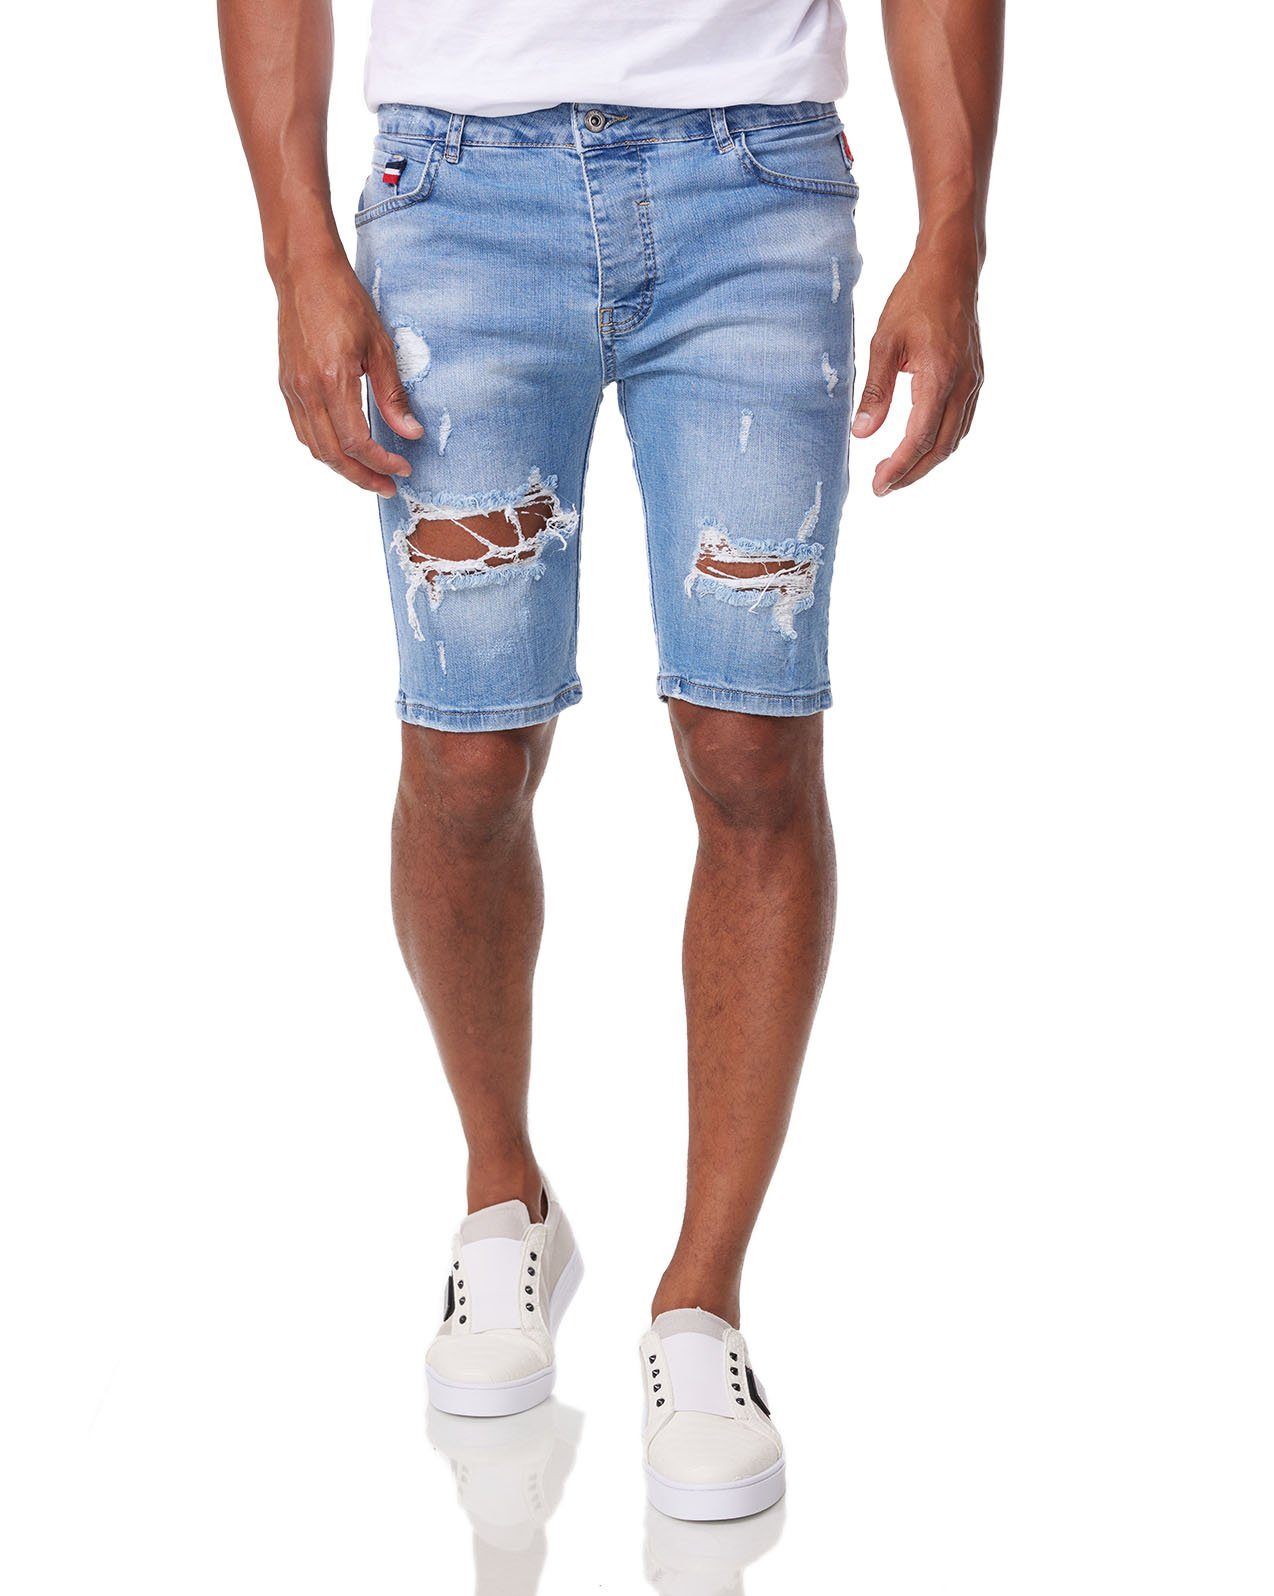 Denim House Jeansbermudas Herren Jeans Shorts Kurzehose Denim Bermuda Stretch Capri Basic